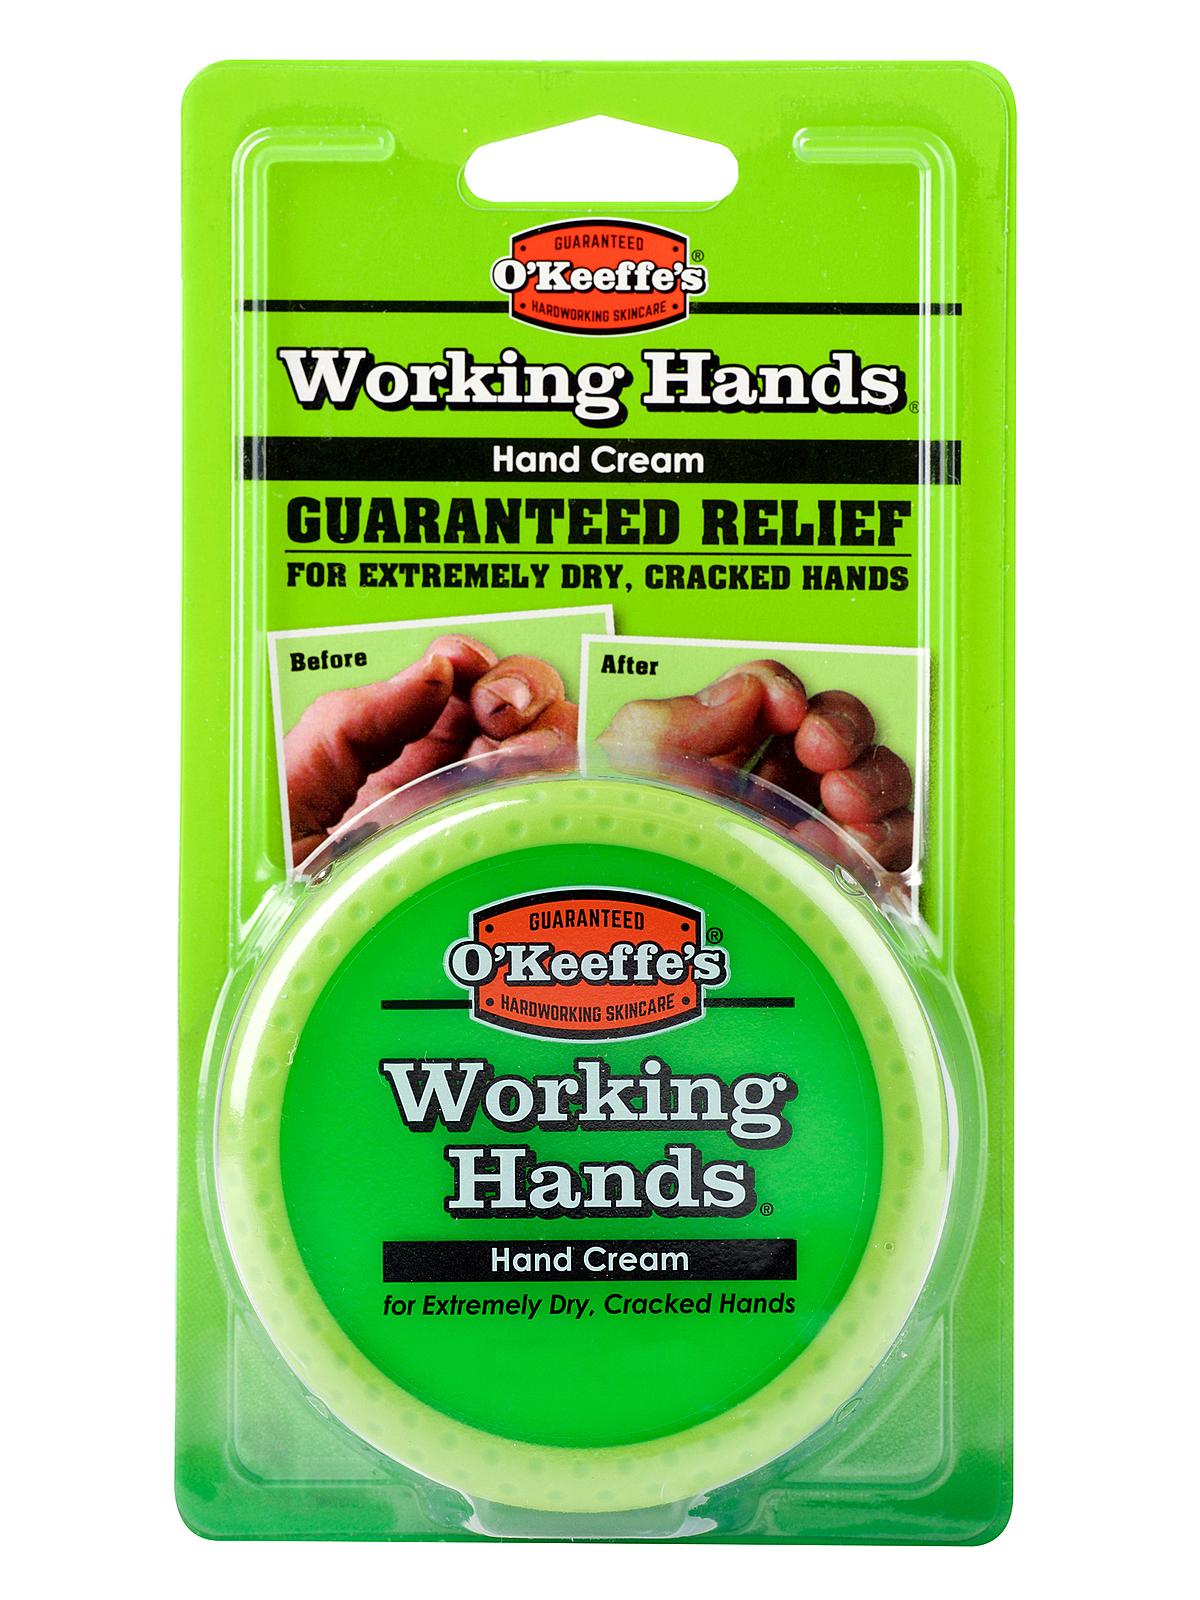 Working Hands Hand Cream 3.4 Oz. Jar